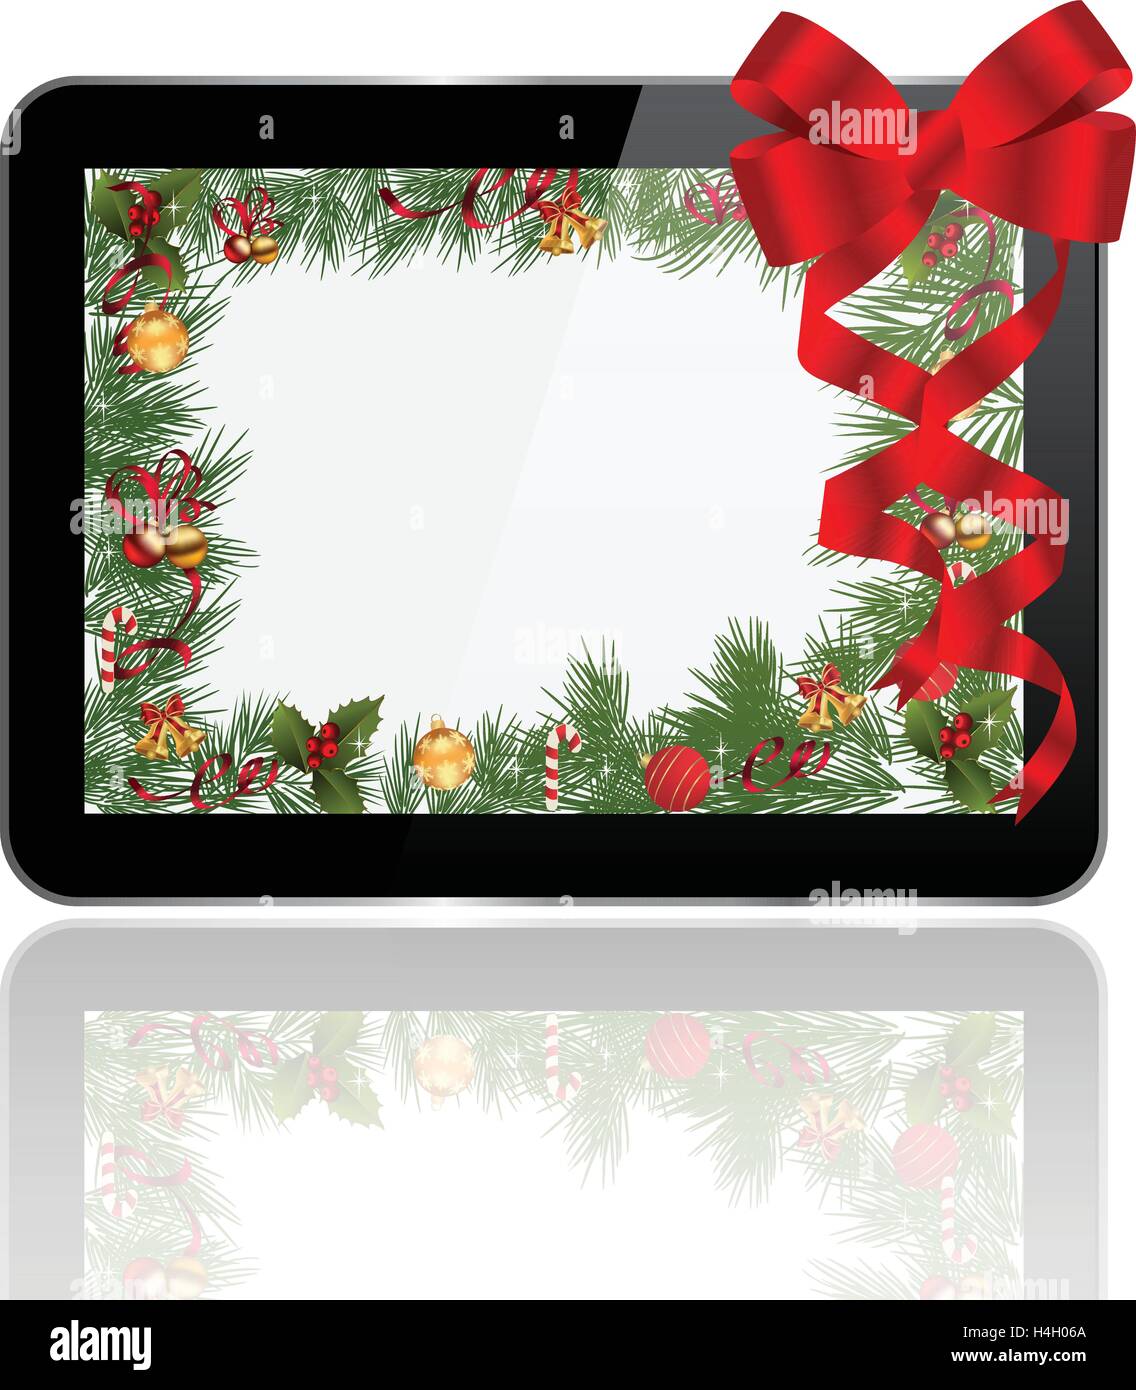 Tablet PC Weihnachtsgeschenk Stock Vektor